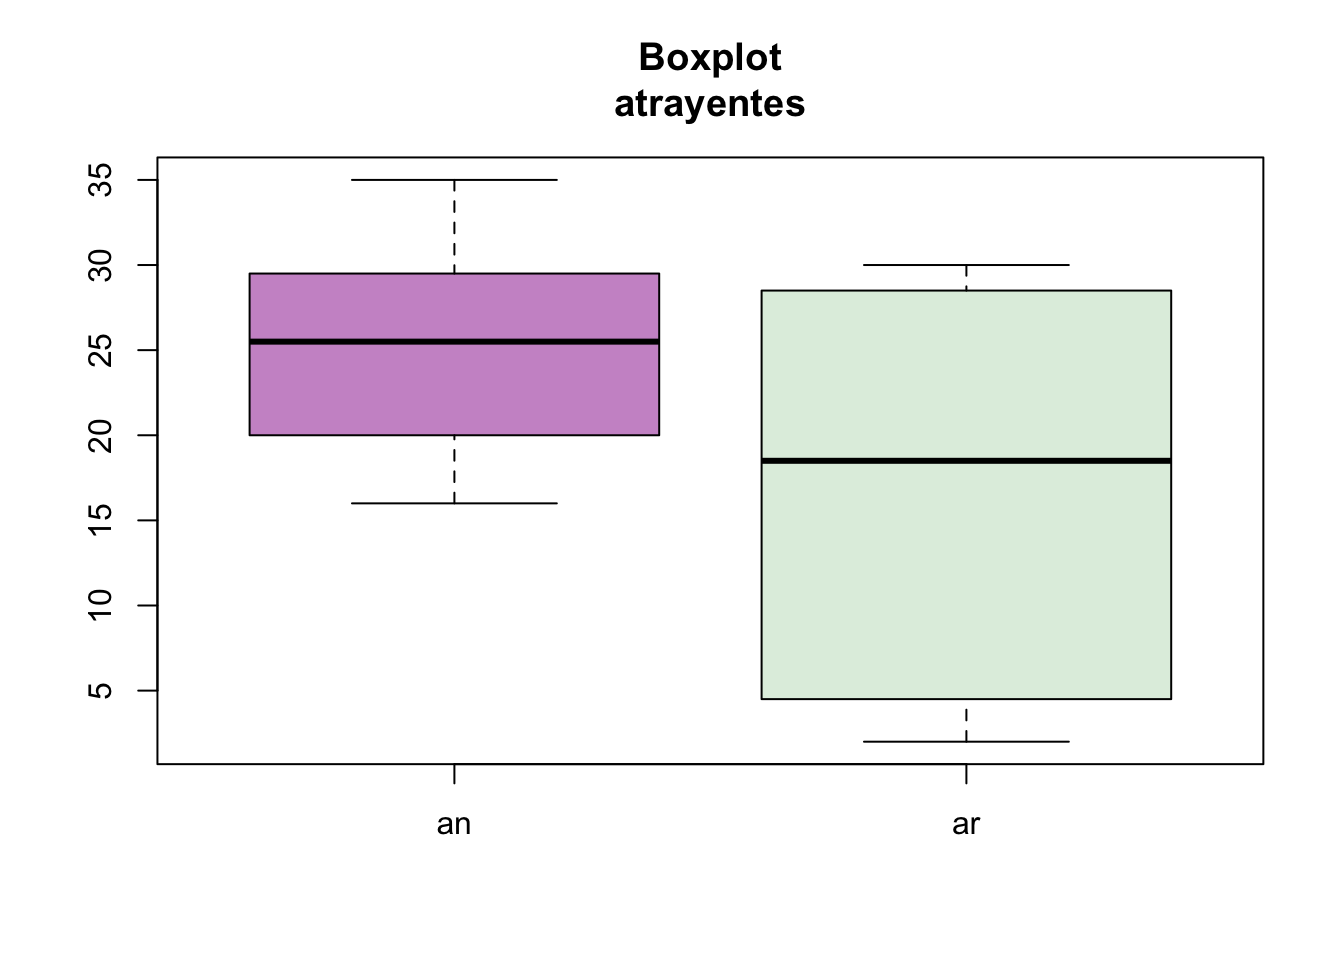 Boxplot de atrayente para las variables an y ar.